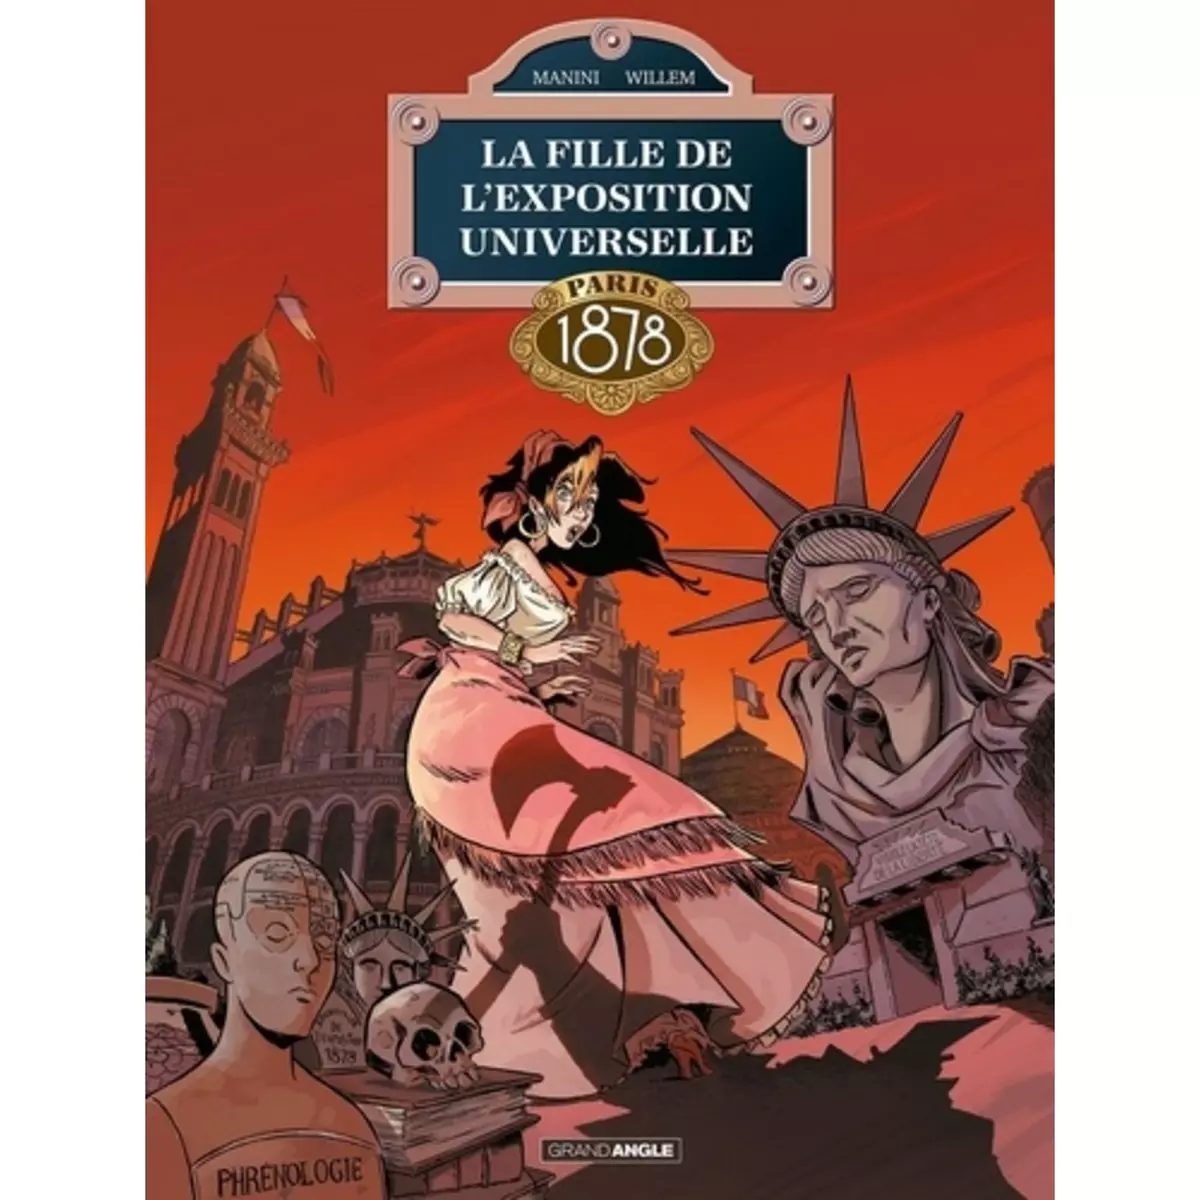  LA FILLE DE L'EXPOSITION UNIVERSELLE TOME 3 : PARIS 1878, Manini Jack